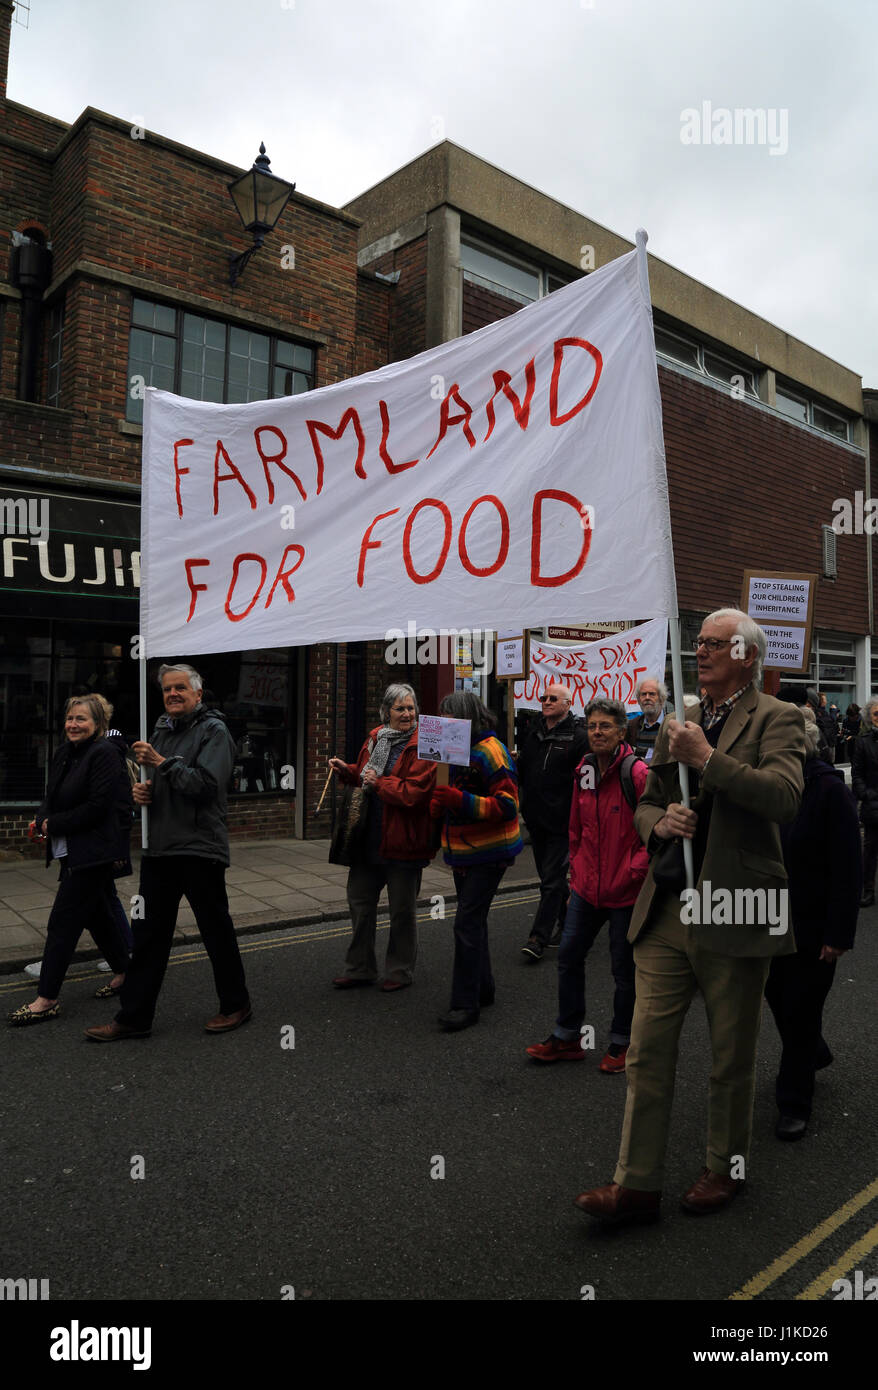 Protestation contre le développement non durable dans la région de shepway, Hythe, dans le Kent, Angleterre Banque D'Images